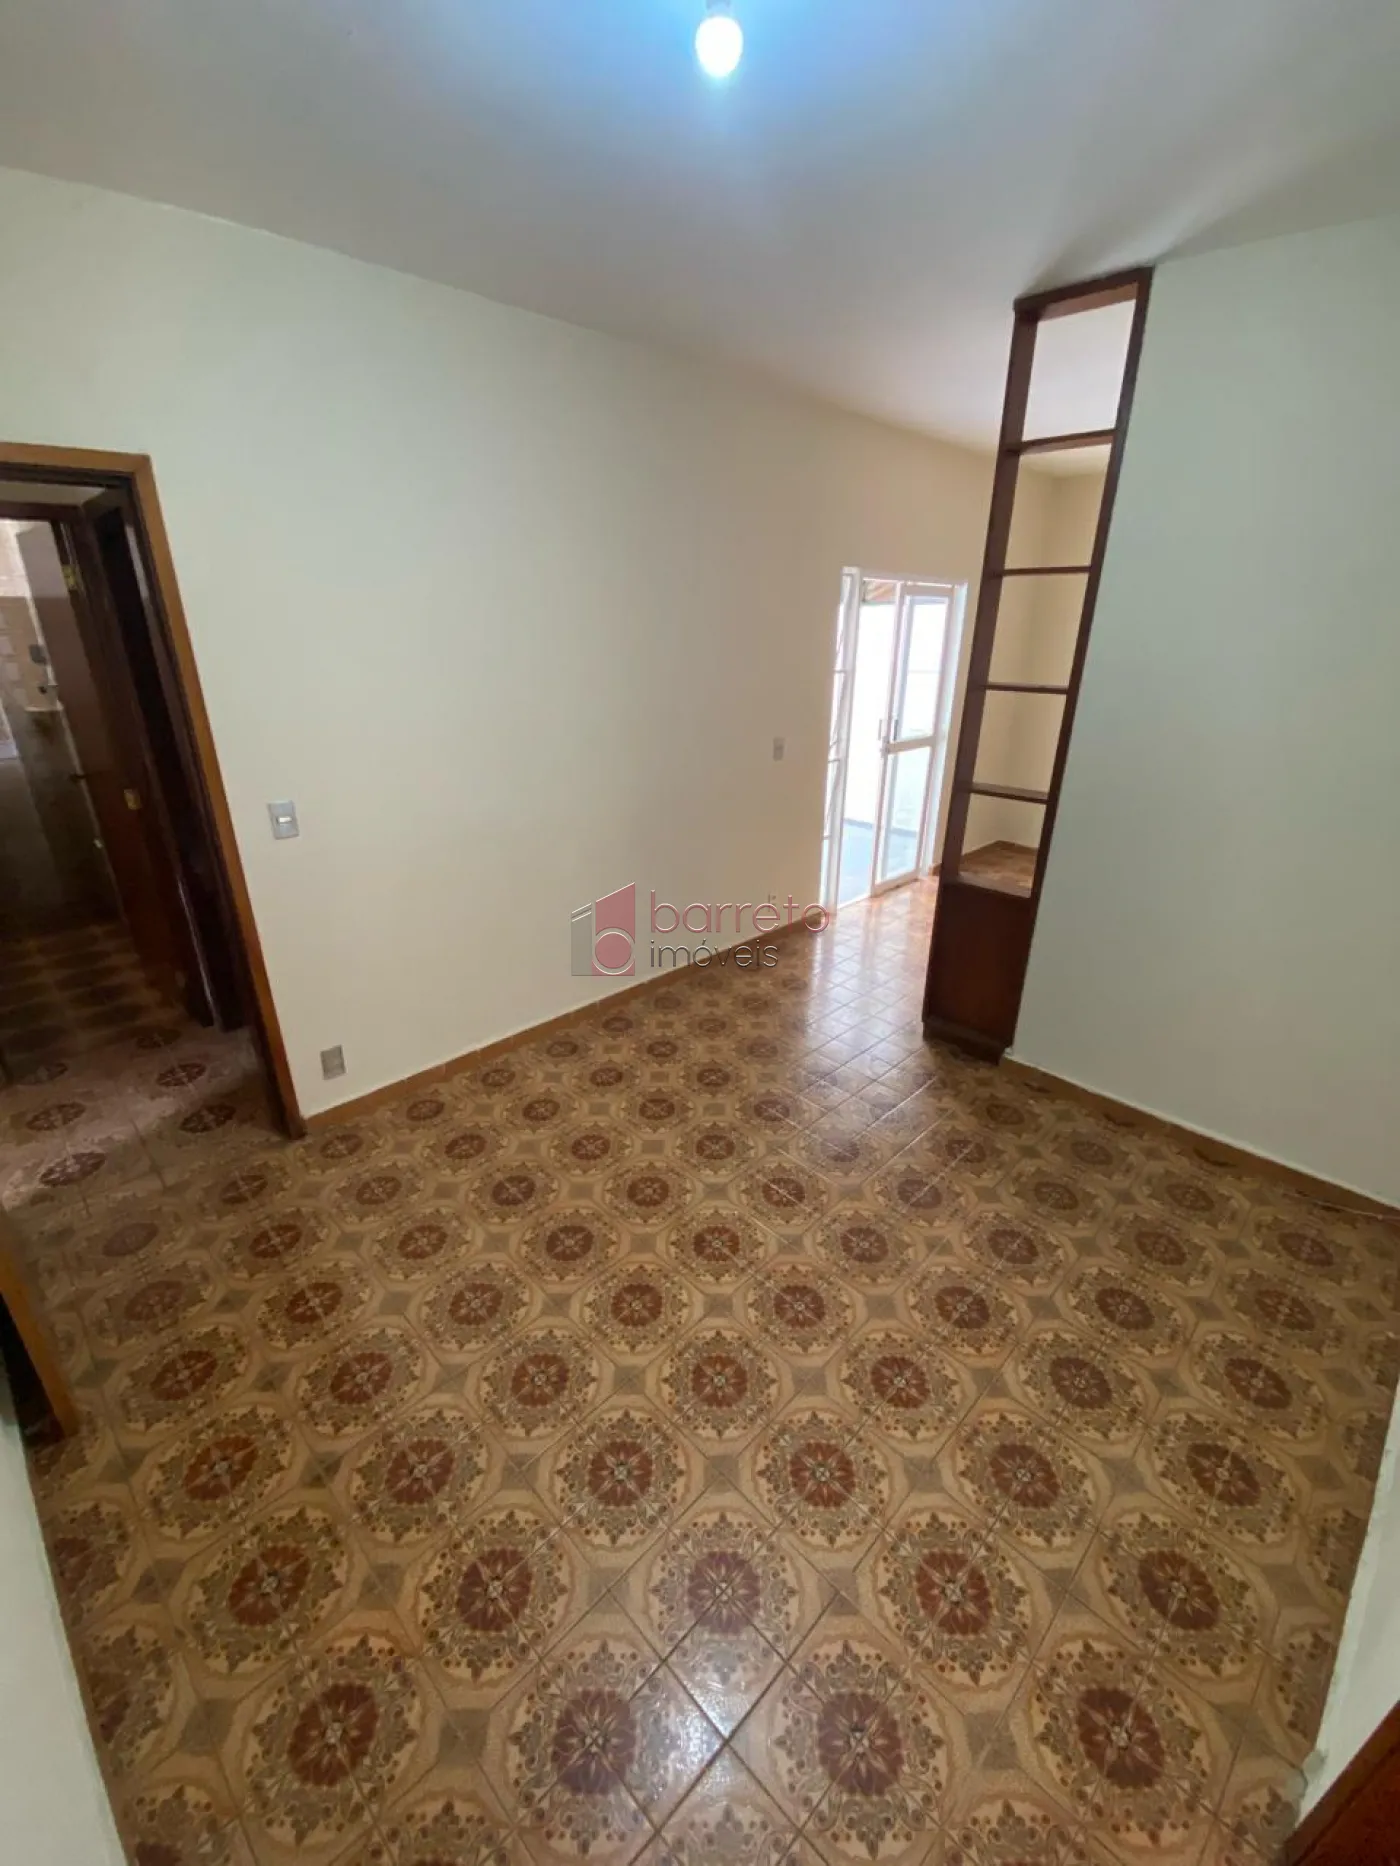 Comprar Casa / Térrea em Jundiaí R$ 645.000,00 - Foto 5